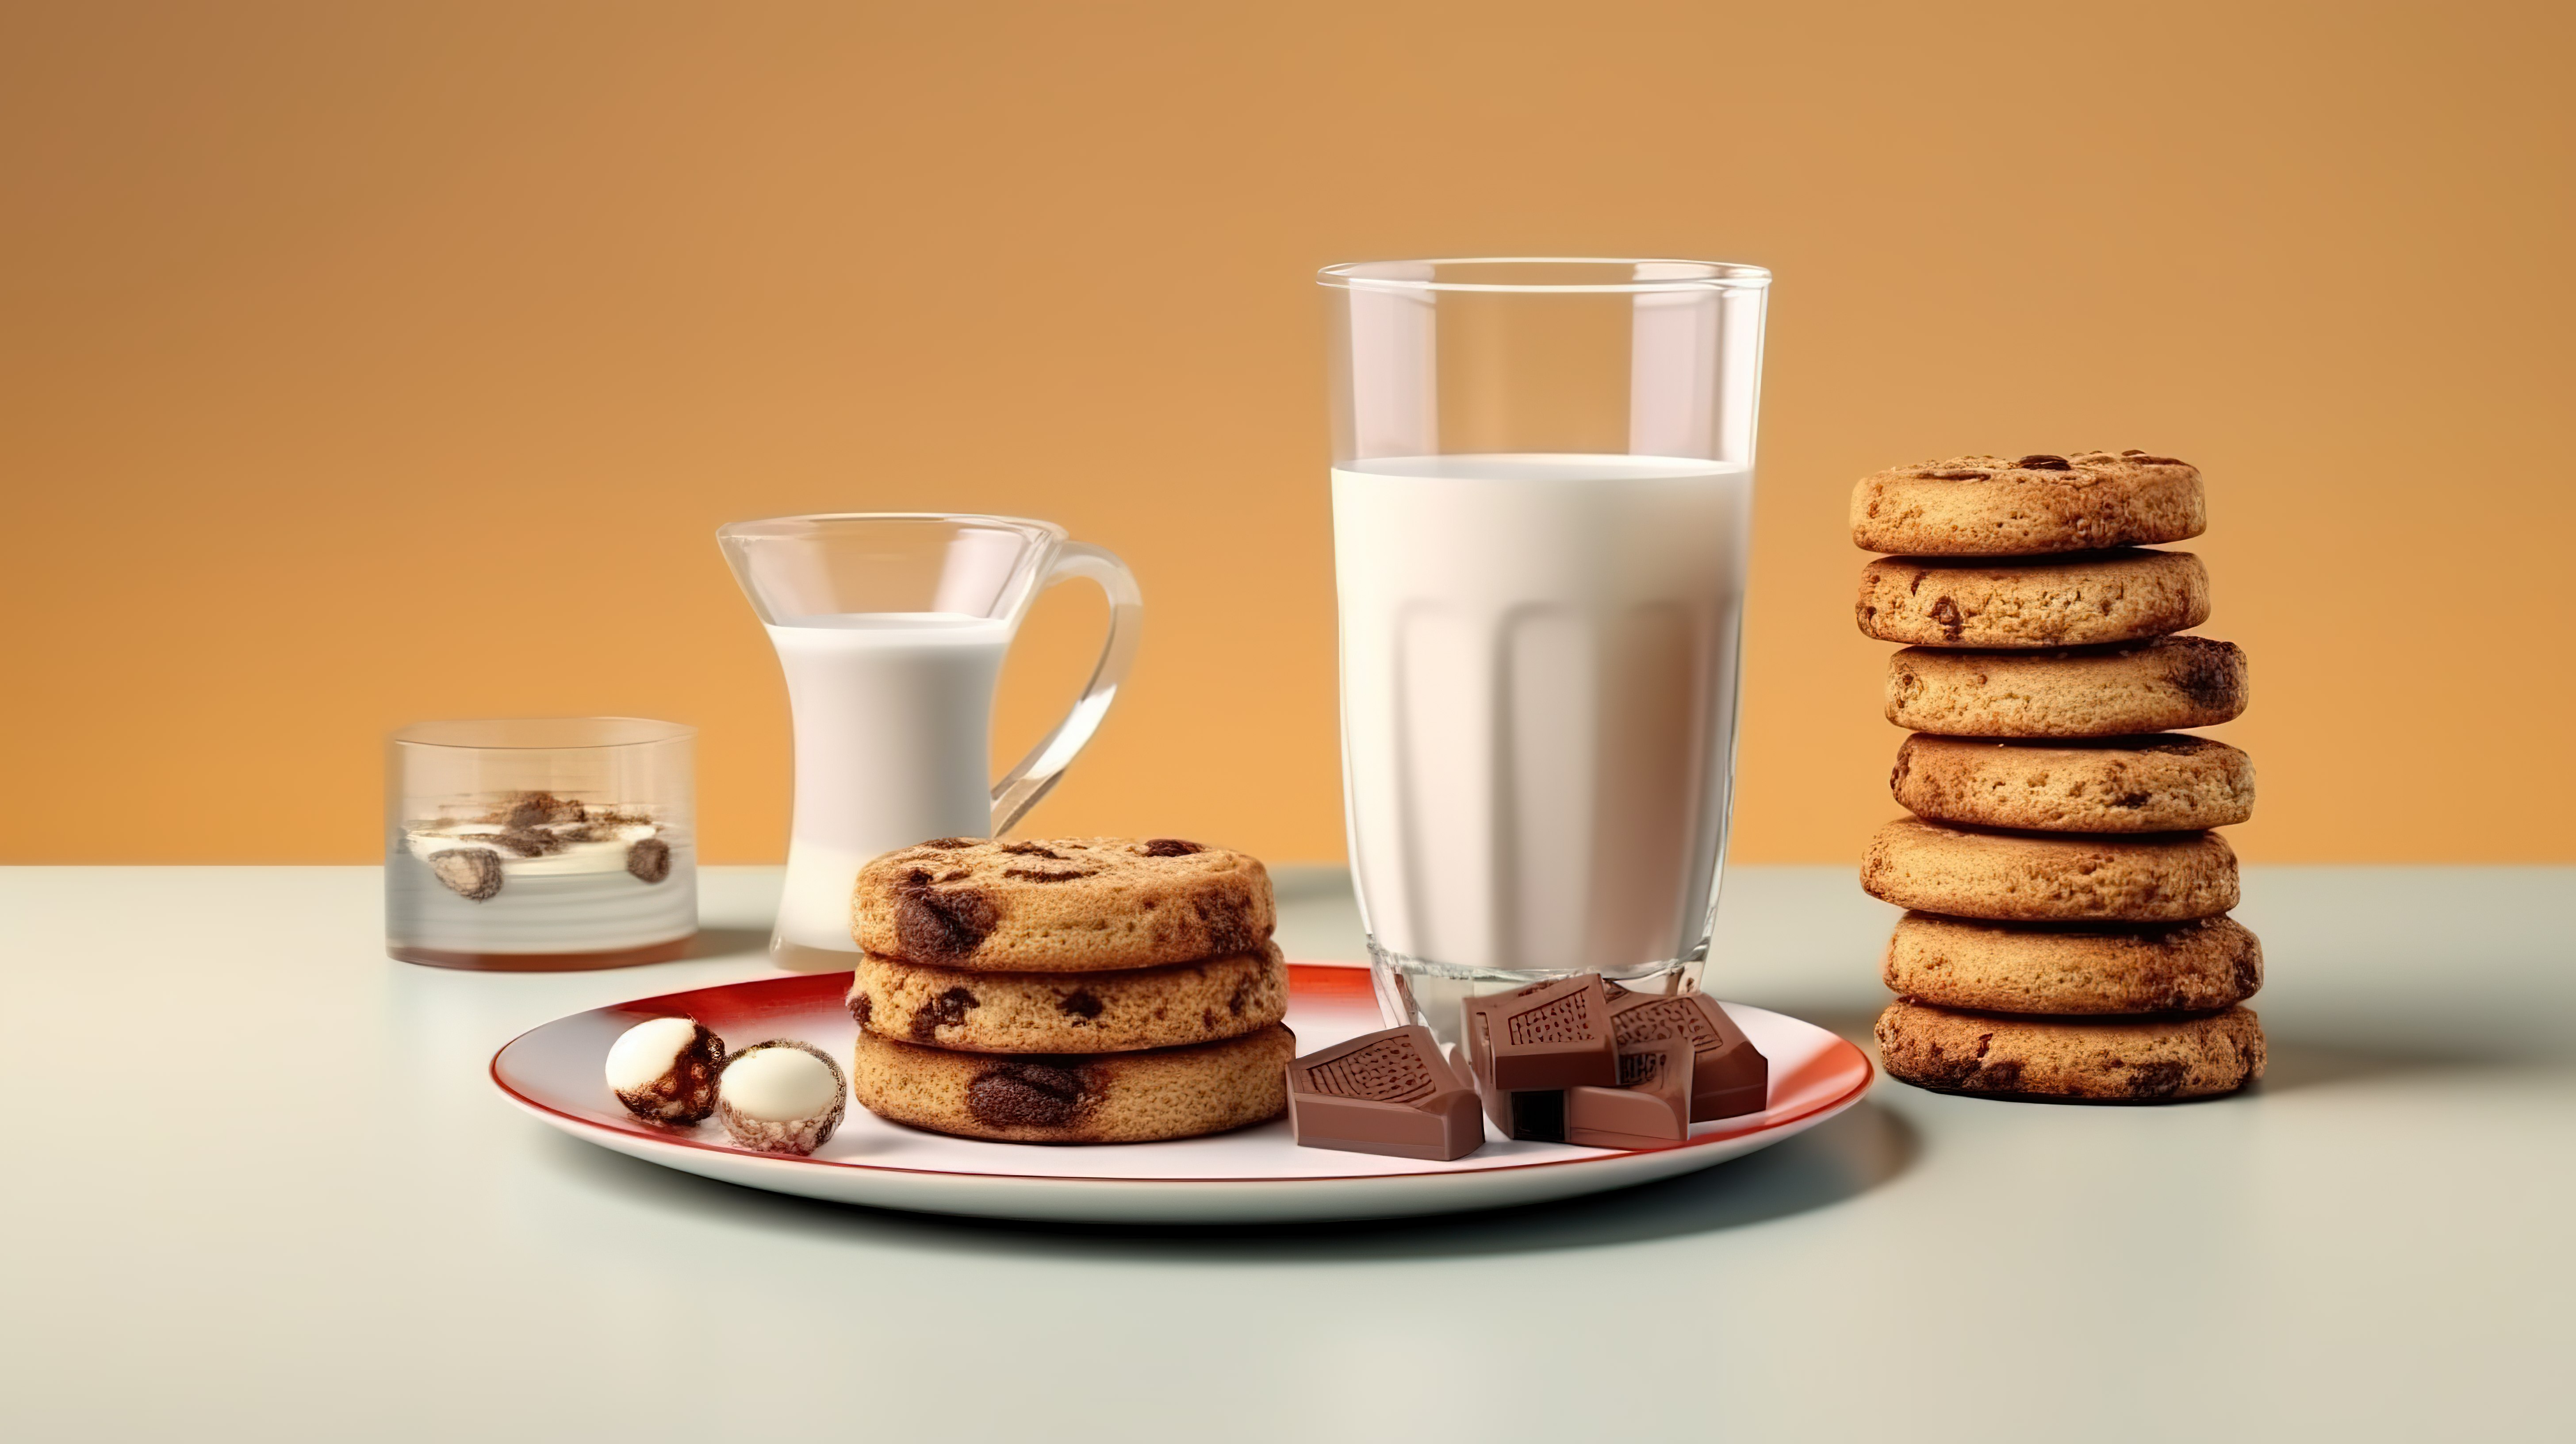 牛奶巧克力饼干和一杯牛奶诱人的 3d 早餐横幅图片